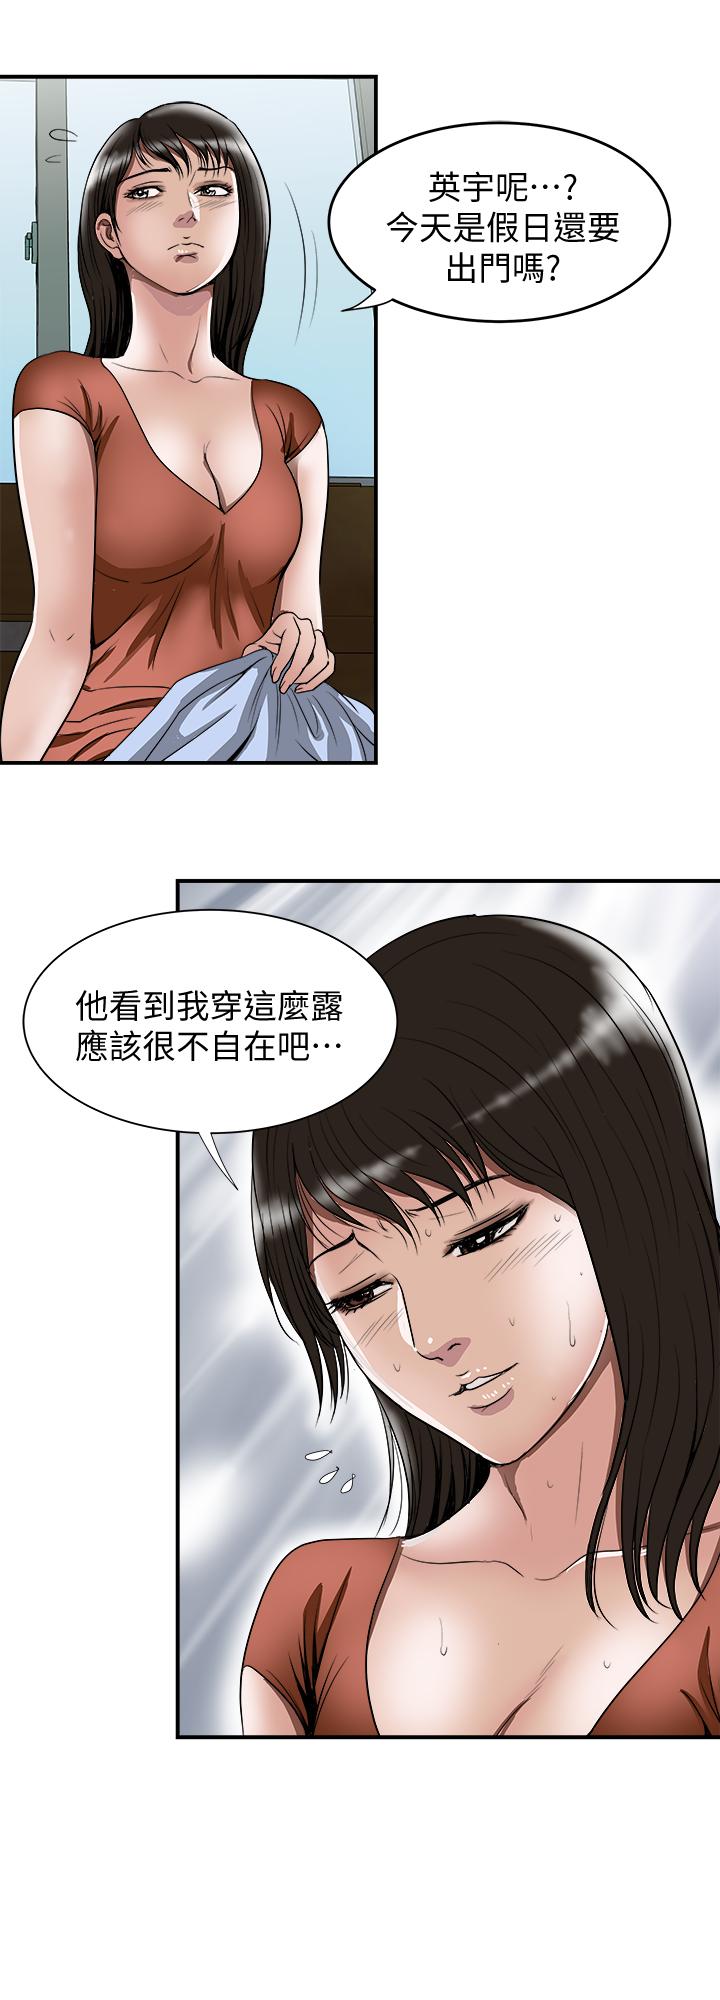 韩国污漫画 別人的老婆 第67话(第2季)-扭曲的欲望 19